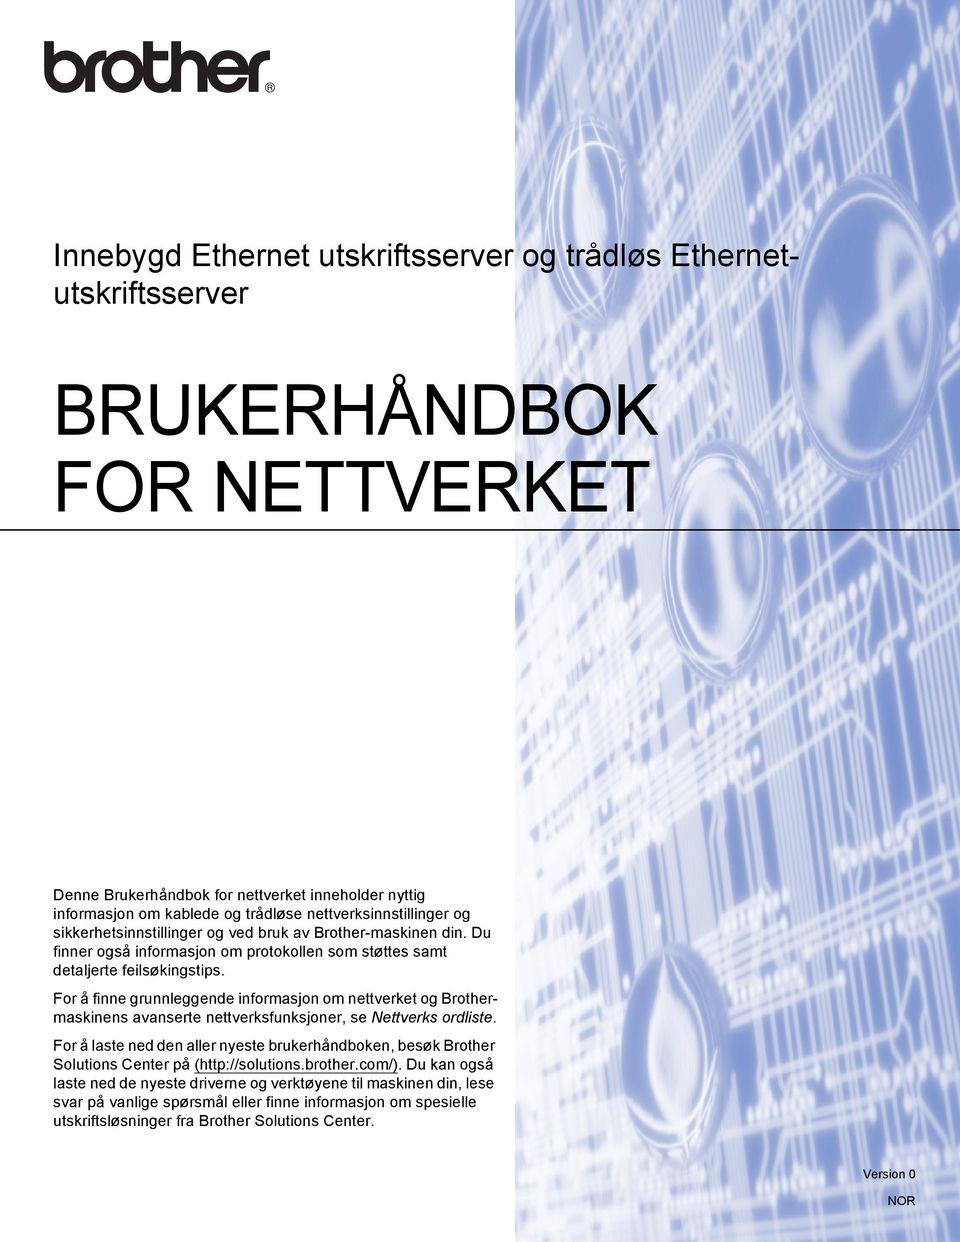 For å finne grunnleggende informasjon om nettverket og Brothermaskinens avanserte nettverksfunksjoner, se Nettverks ordliste.